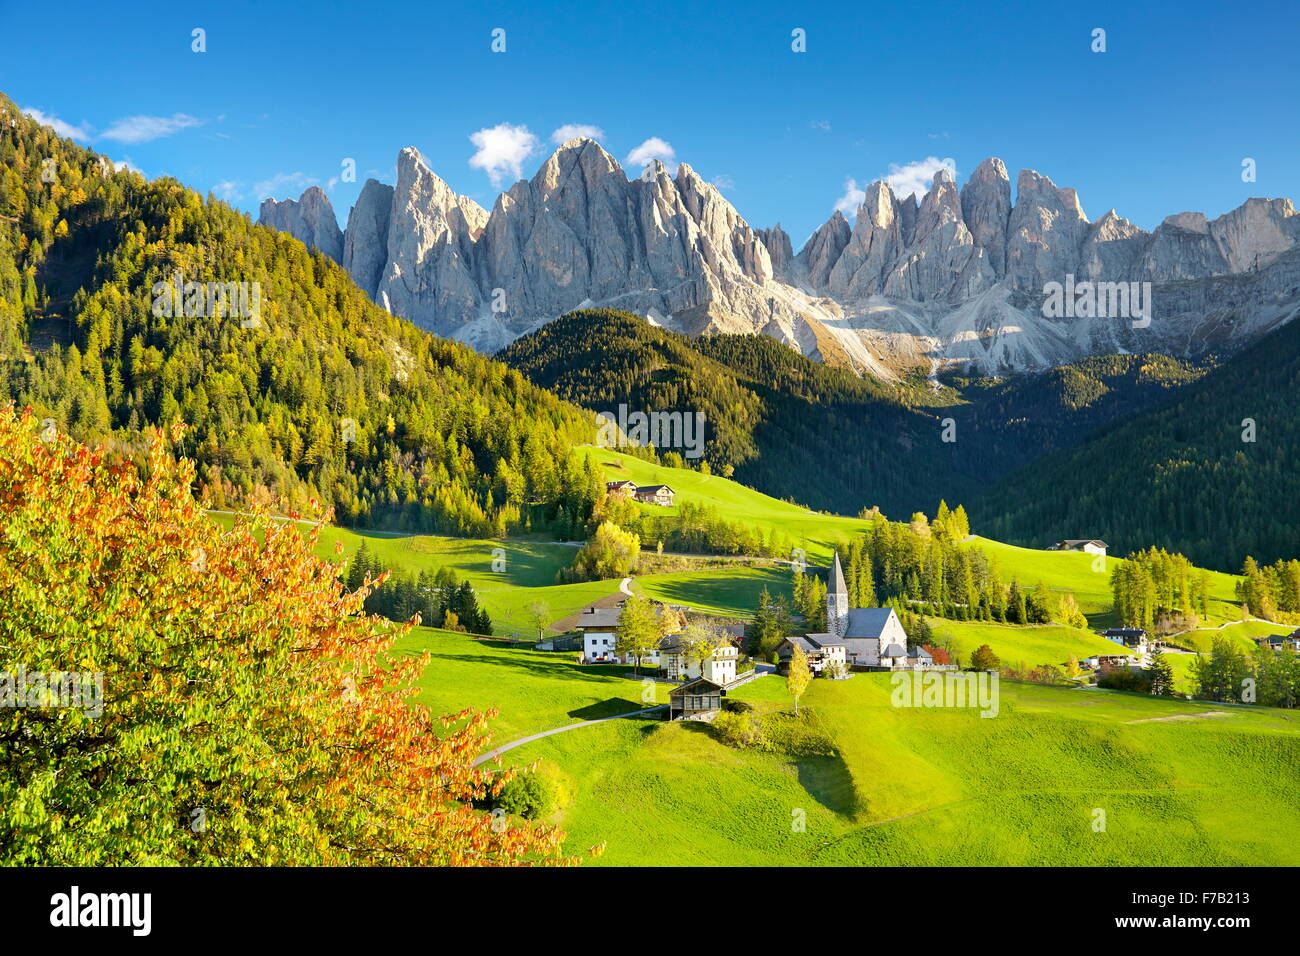 Montagnes des Dolomites en automne - Santa Maddalena, Village du Parc Naturel Puez Odle, Alpes européennes, le Tyrol du Sud, Italie Banque D'Images